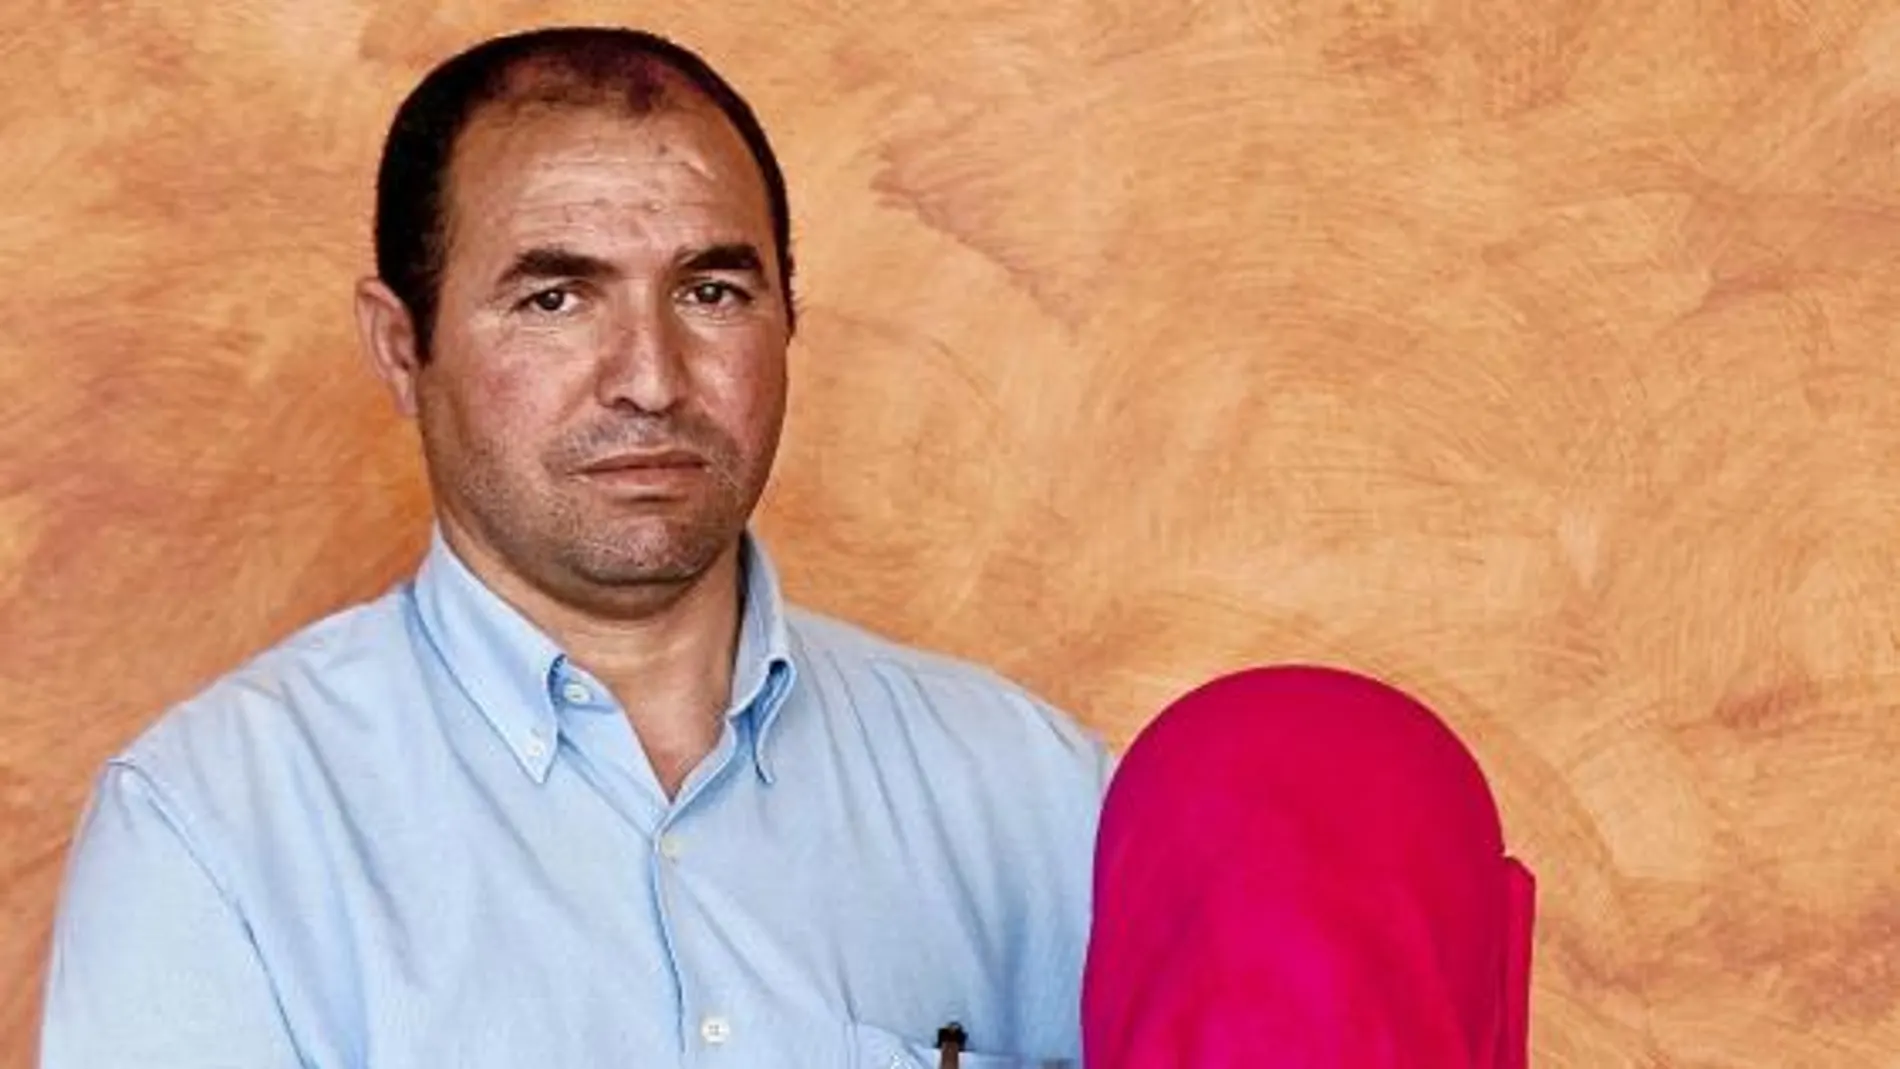 La joven de 12 años y su padre, ambos de origen marroquí